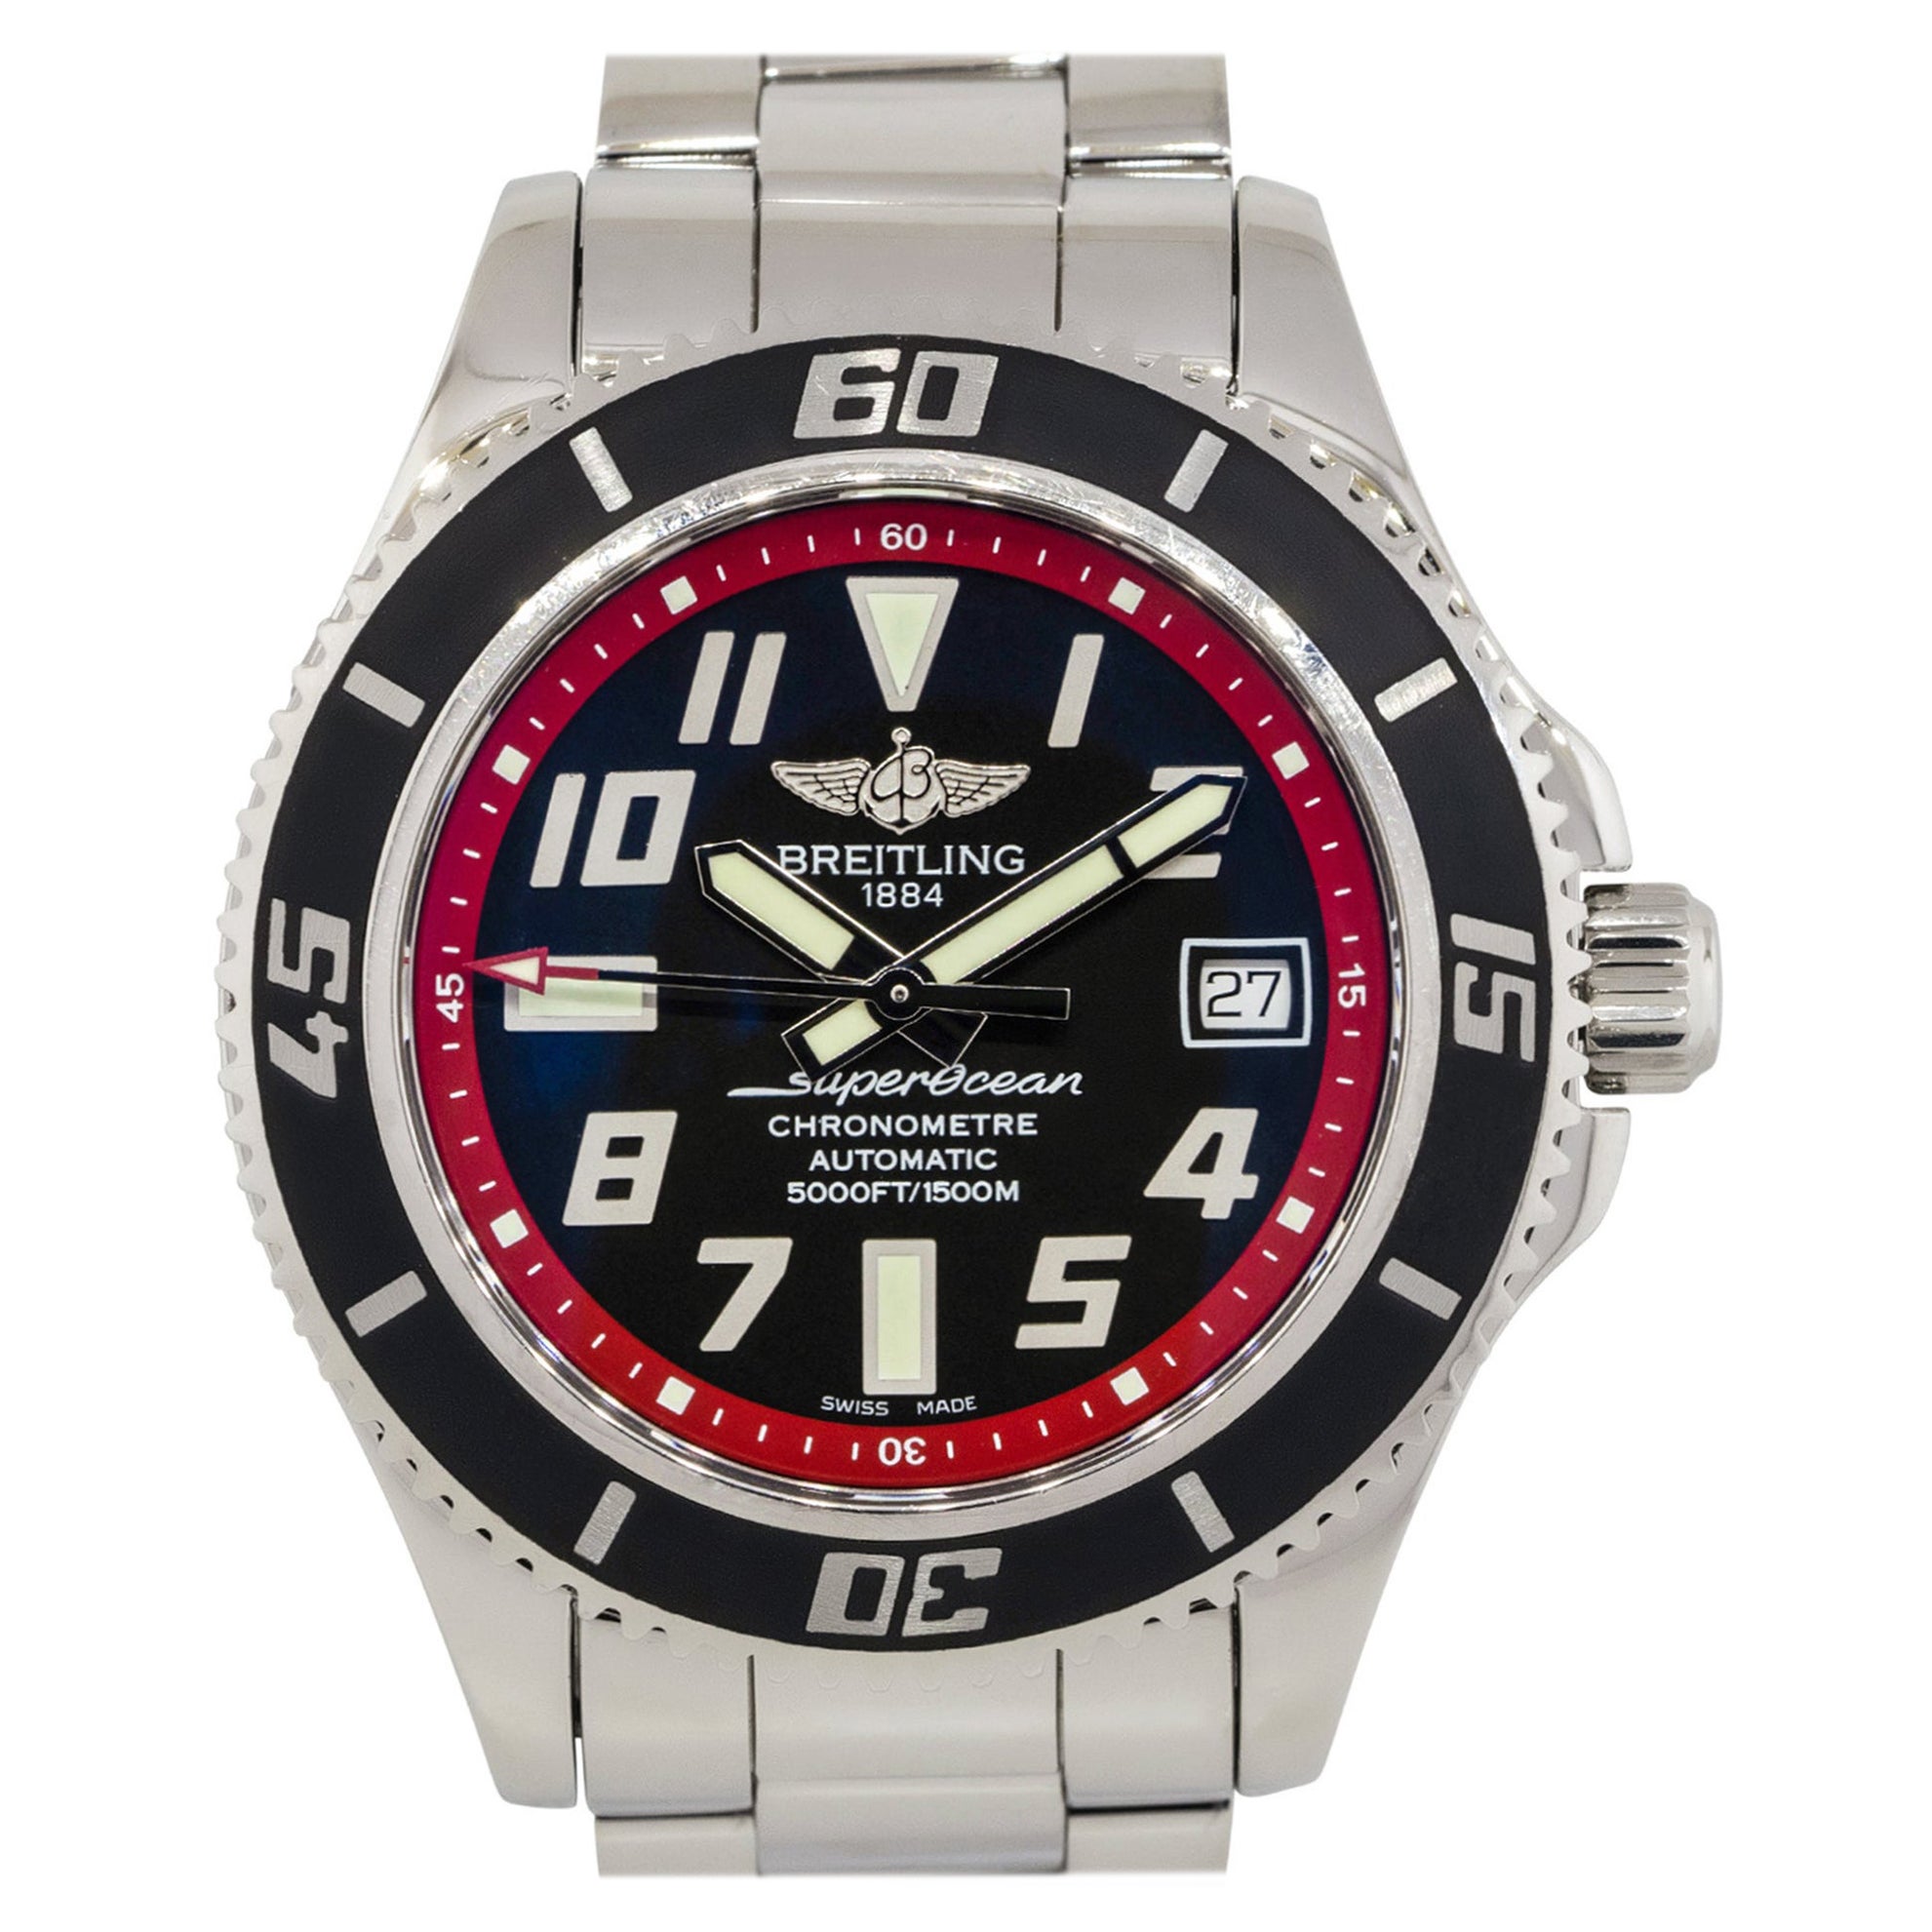 Breitling A17384 Superocean Edelstahl-Uhr mit schwarzem Zifferblatt